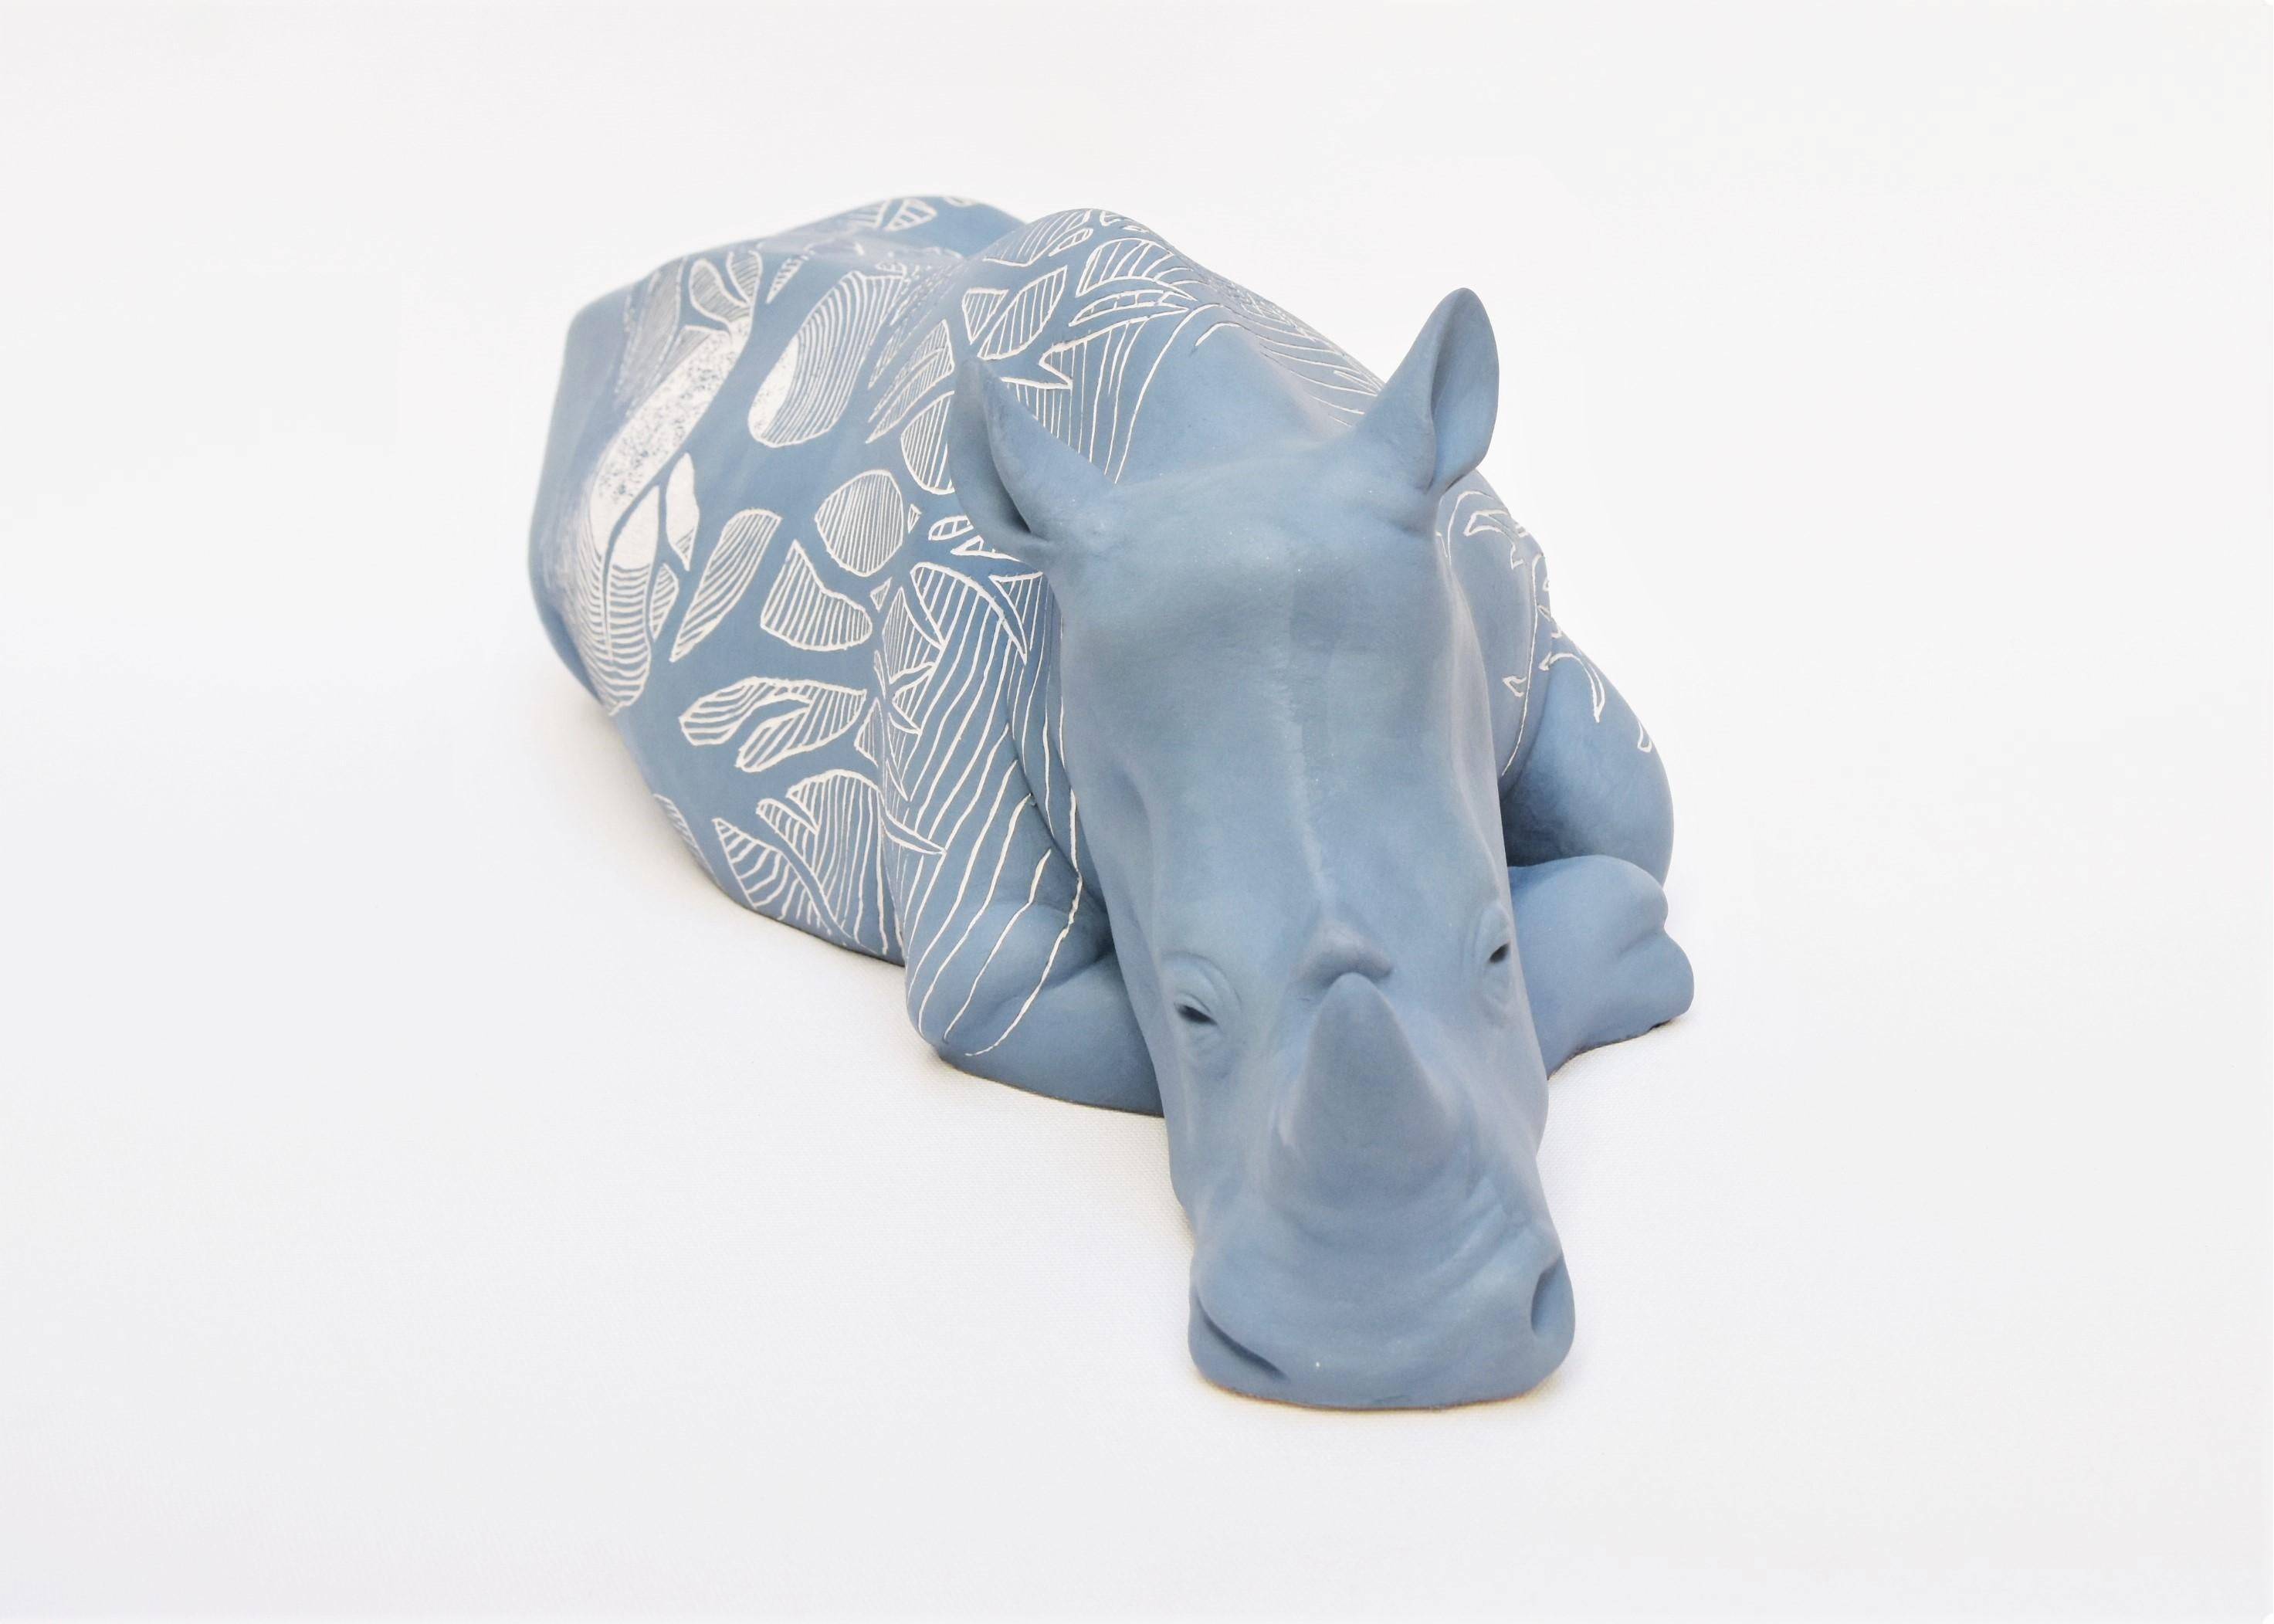 « Rhinoceros - Le clair de lune », sculpture animalière unique, céramique, technique sgraffite - Sculpture de Sabina Pelc